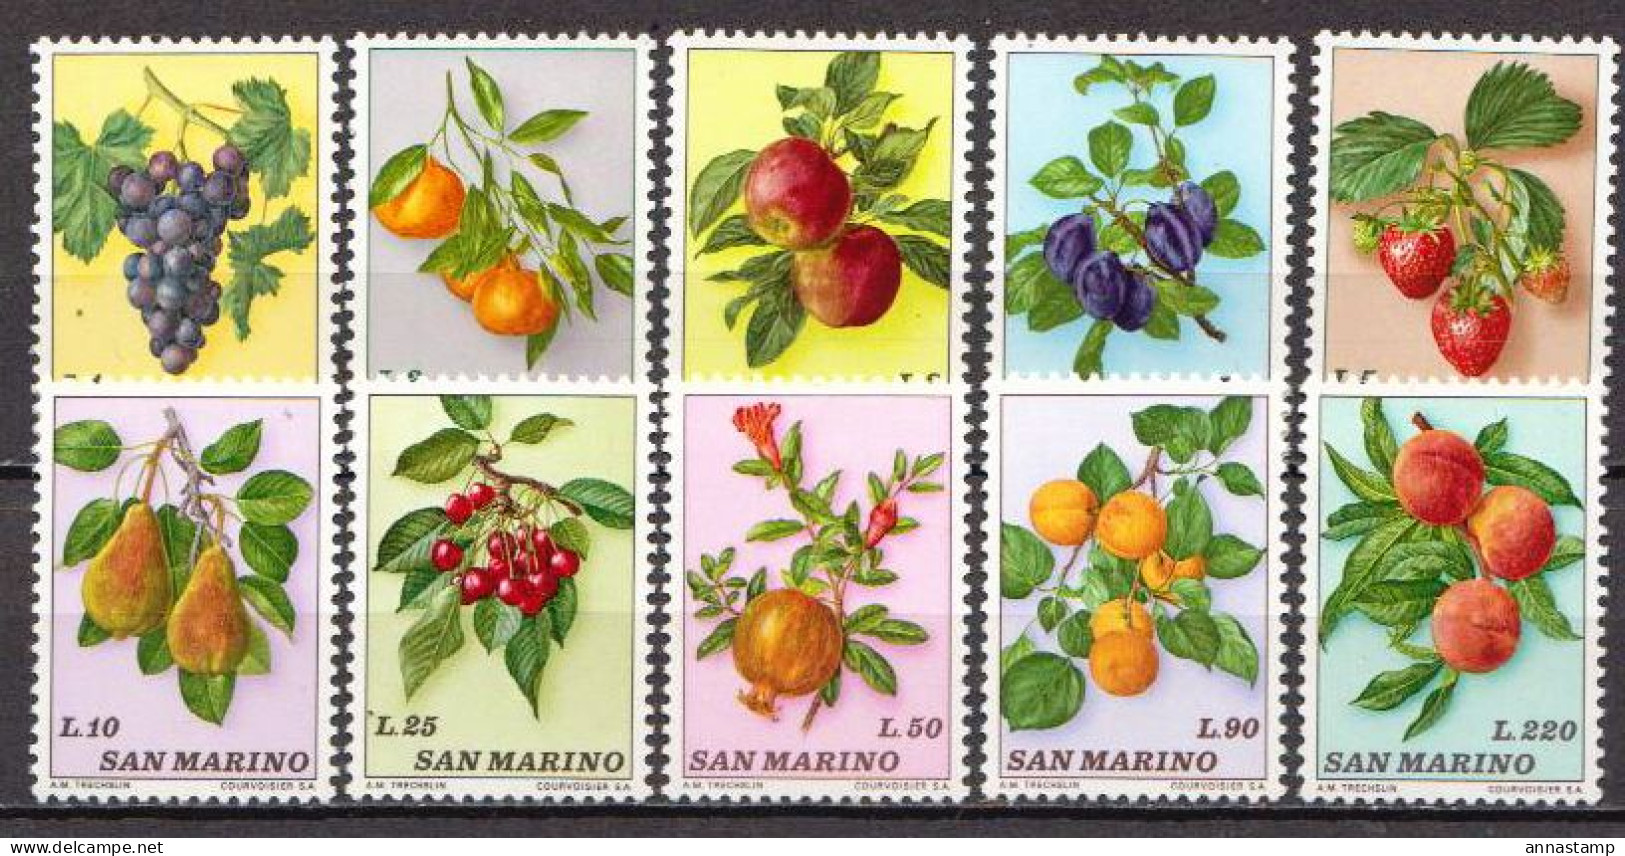 San Marino MNH Set - Fruit